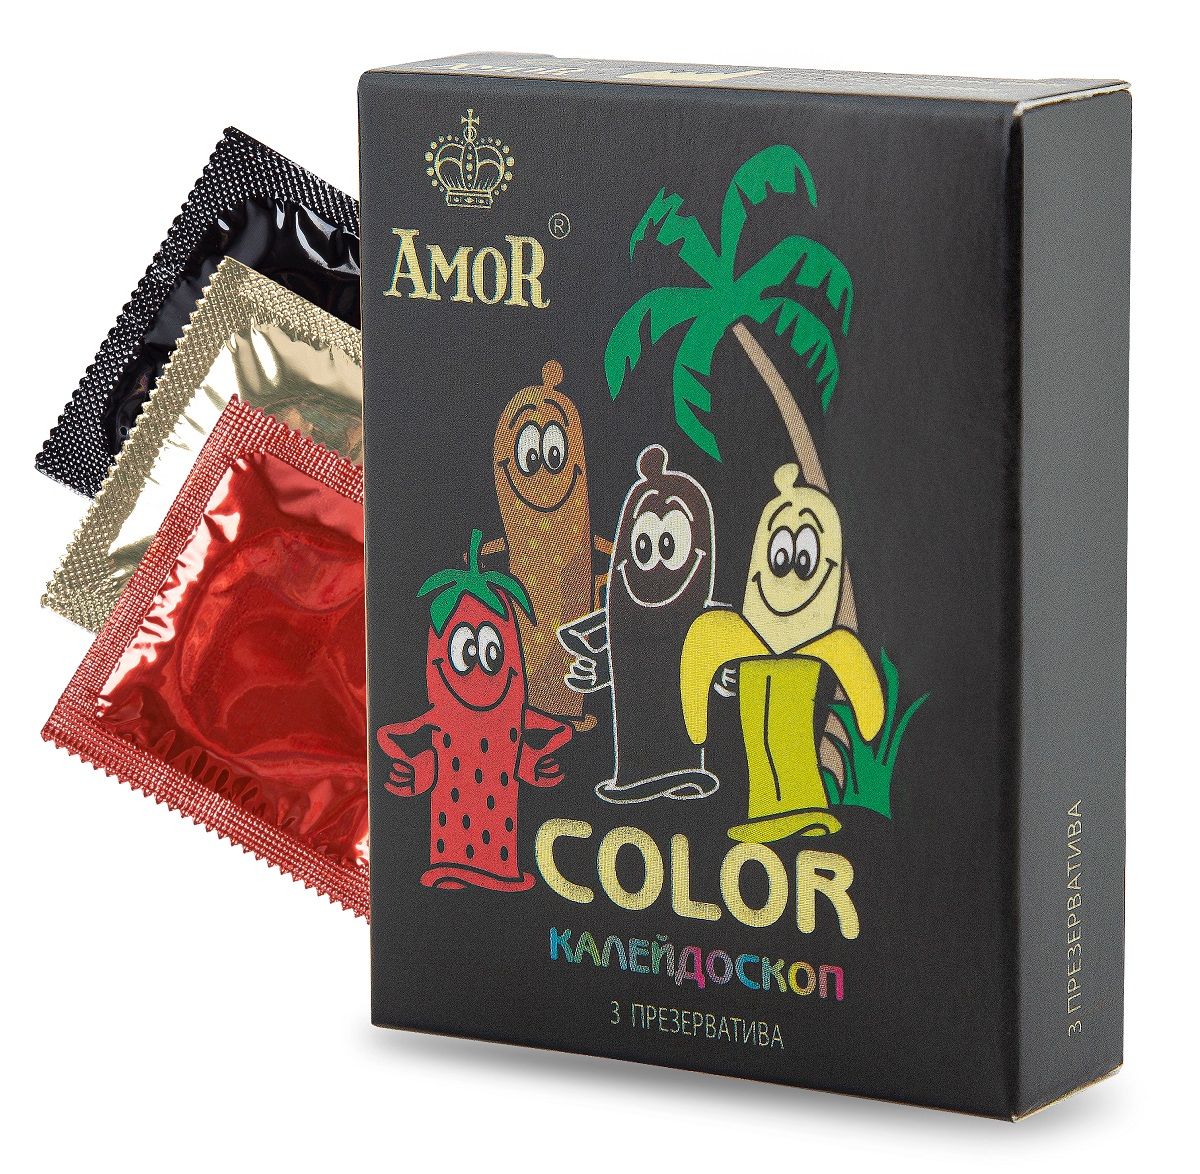 Купить Ароматизированные презервативы AMOR Color Яркая линия цветные 3 шт.